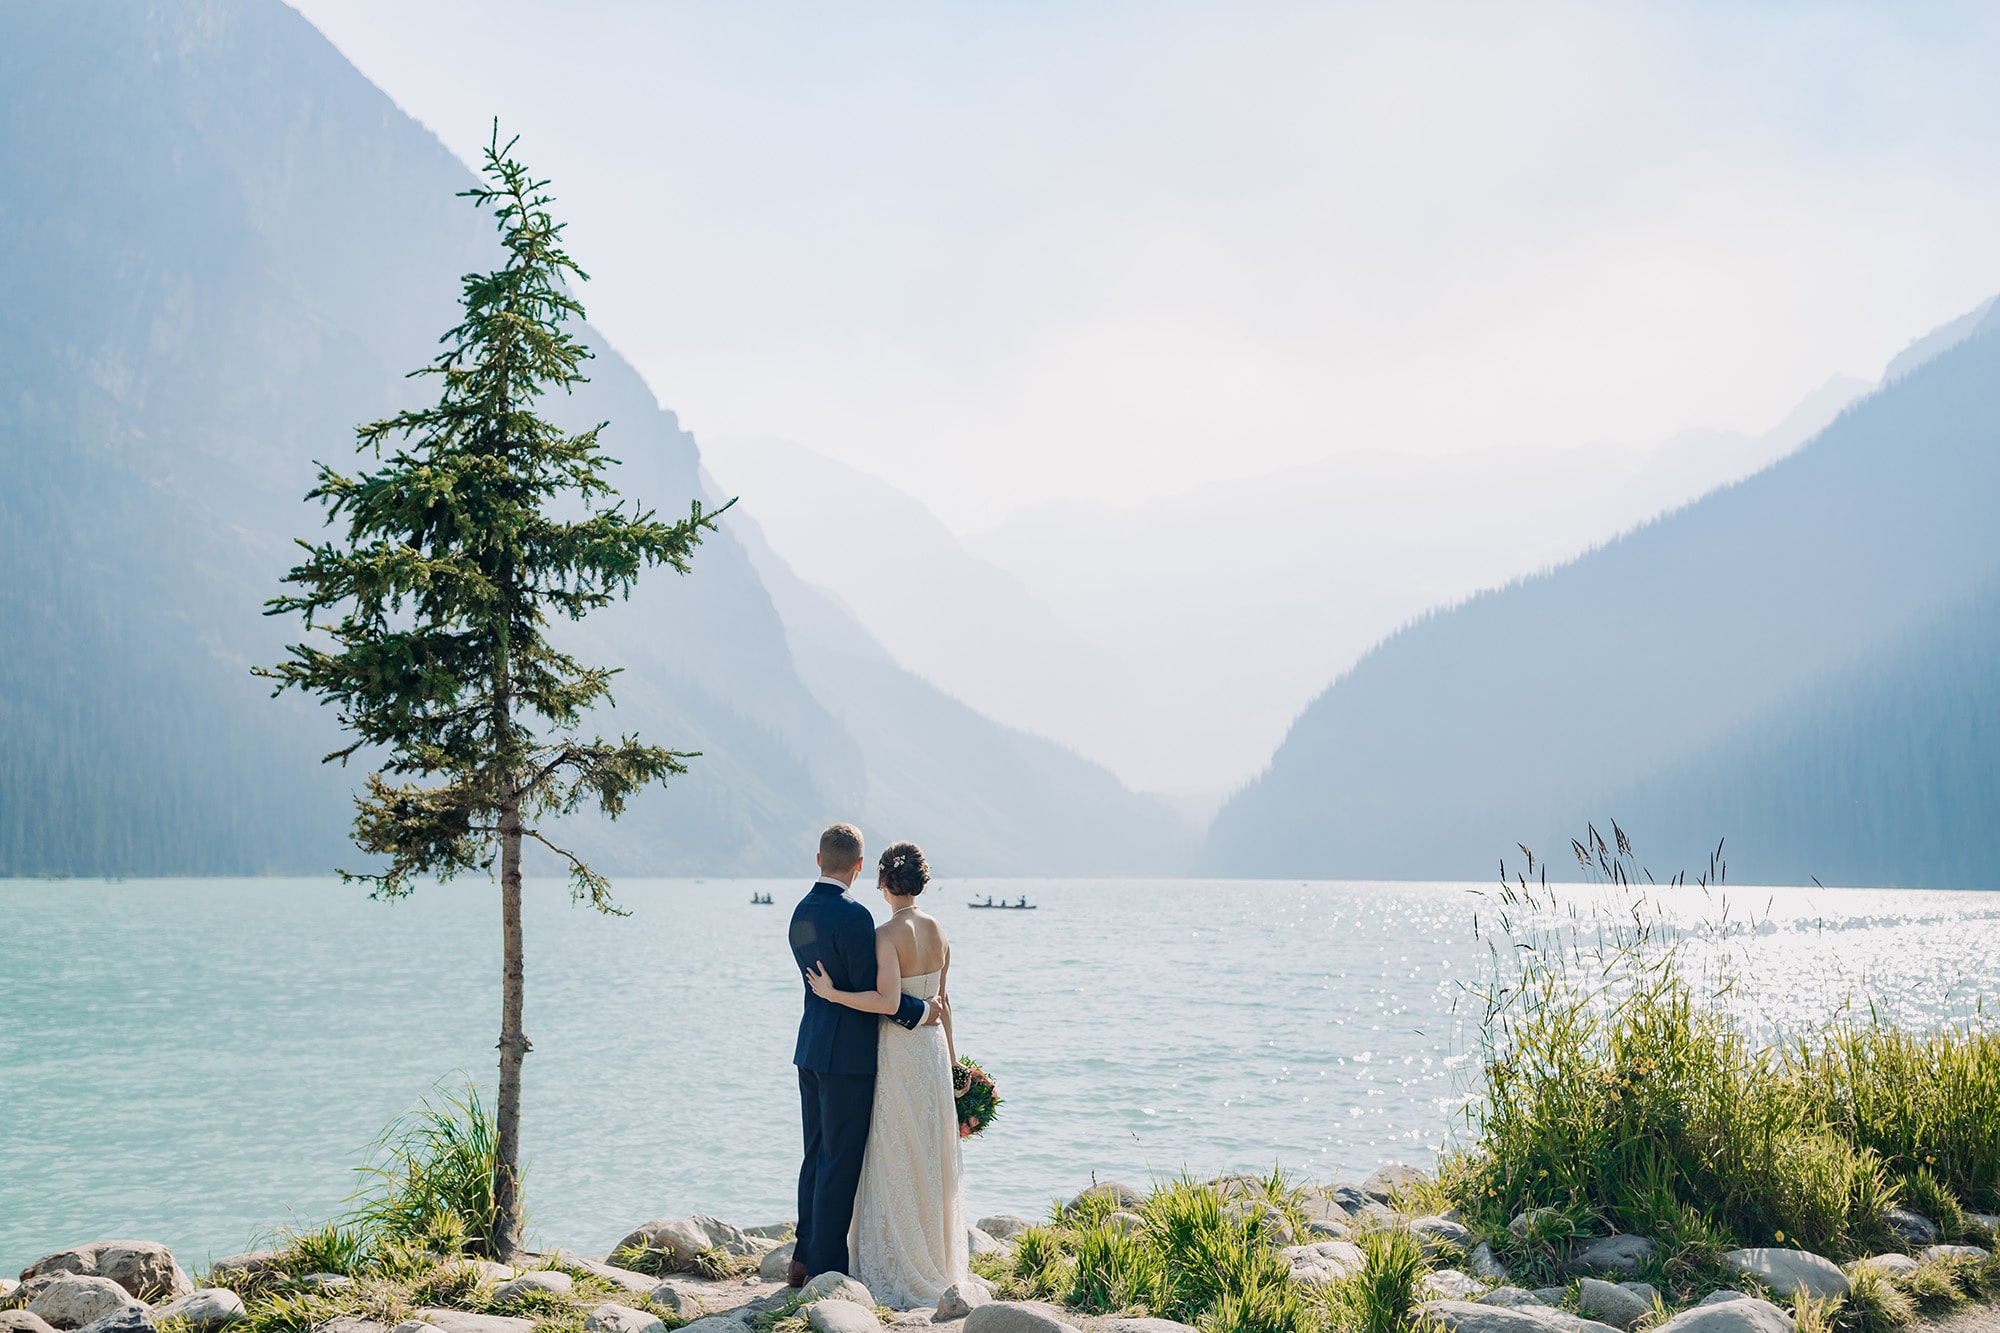 Lake Louise Outdoor wedding 